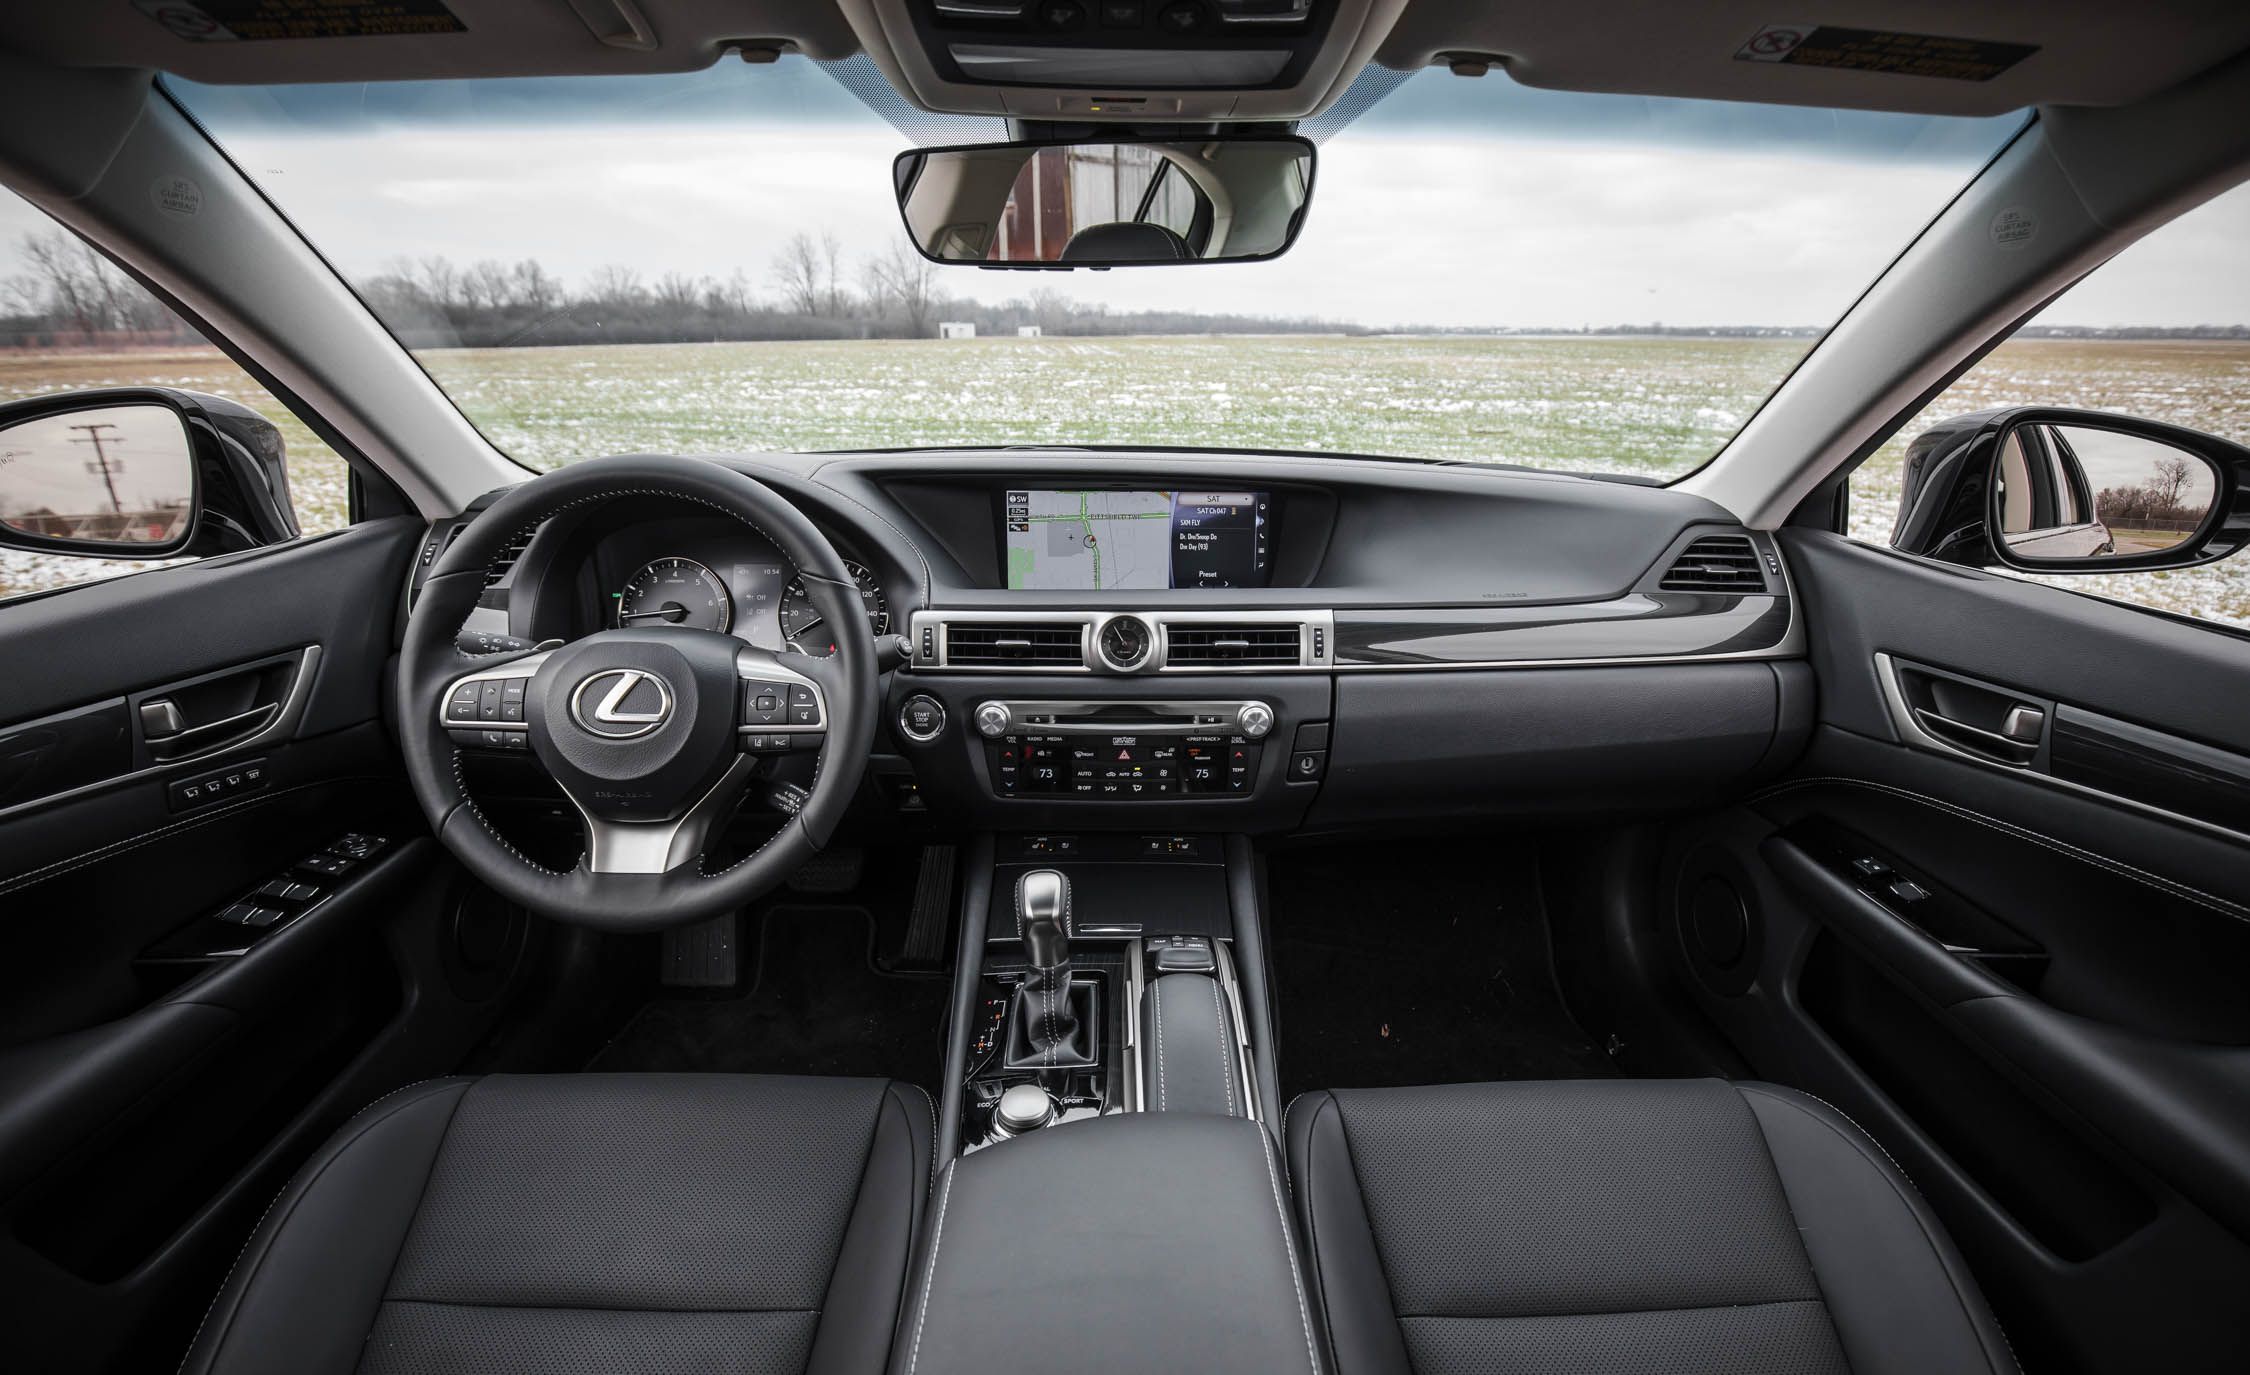 2017 Lexus Gs200t Interior (View 1 of 26)